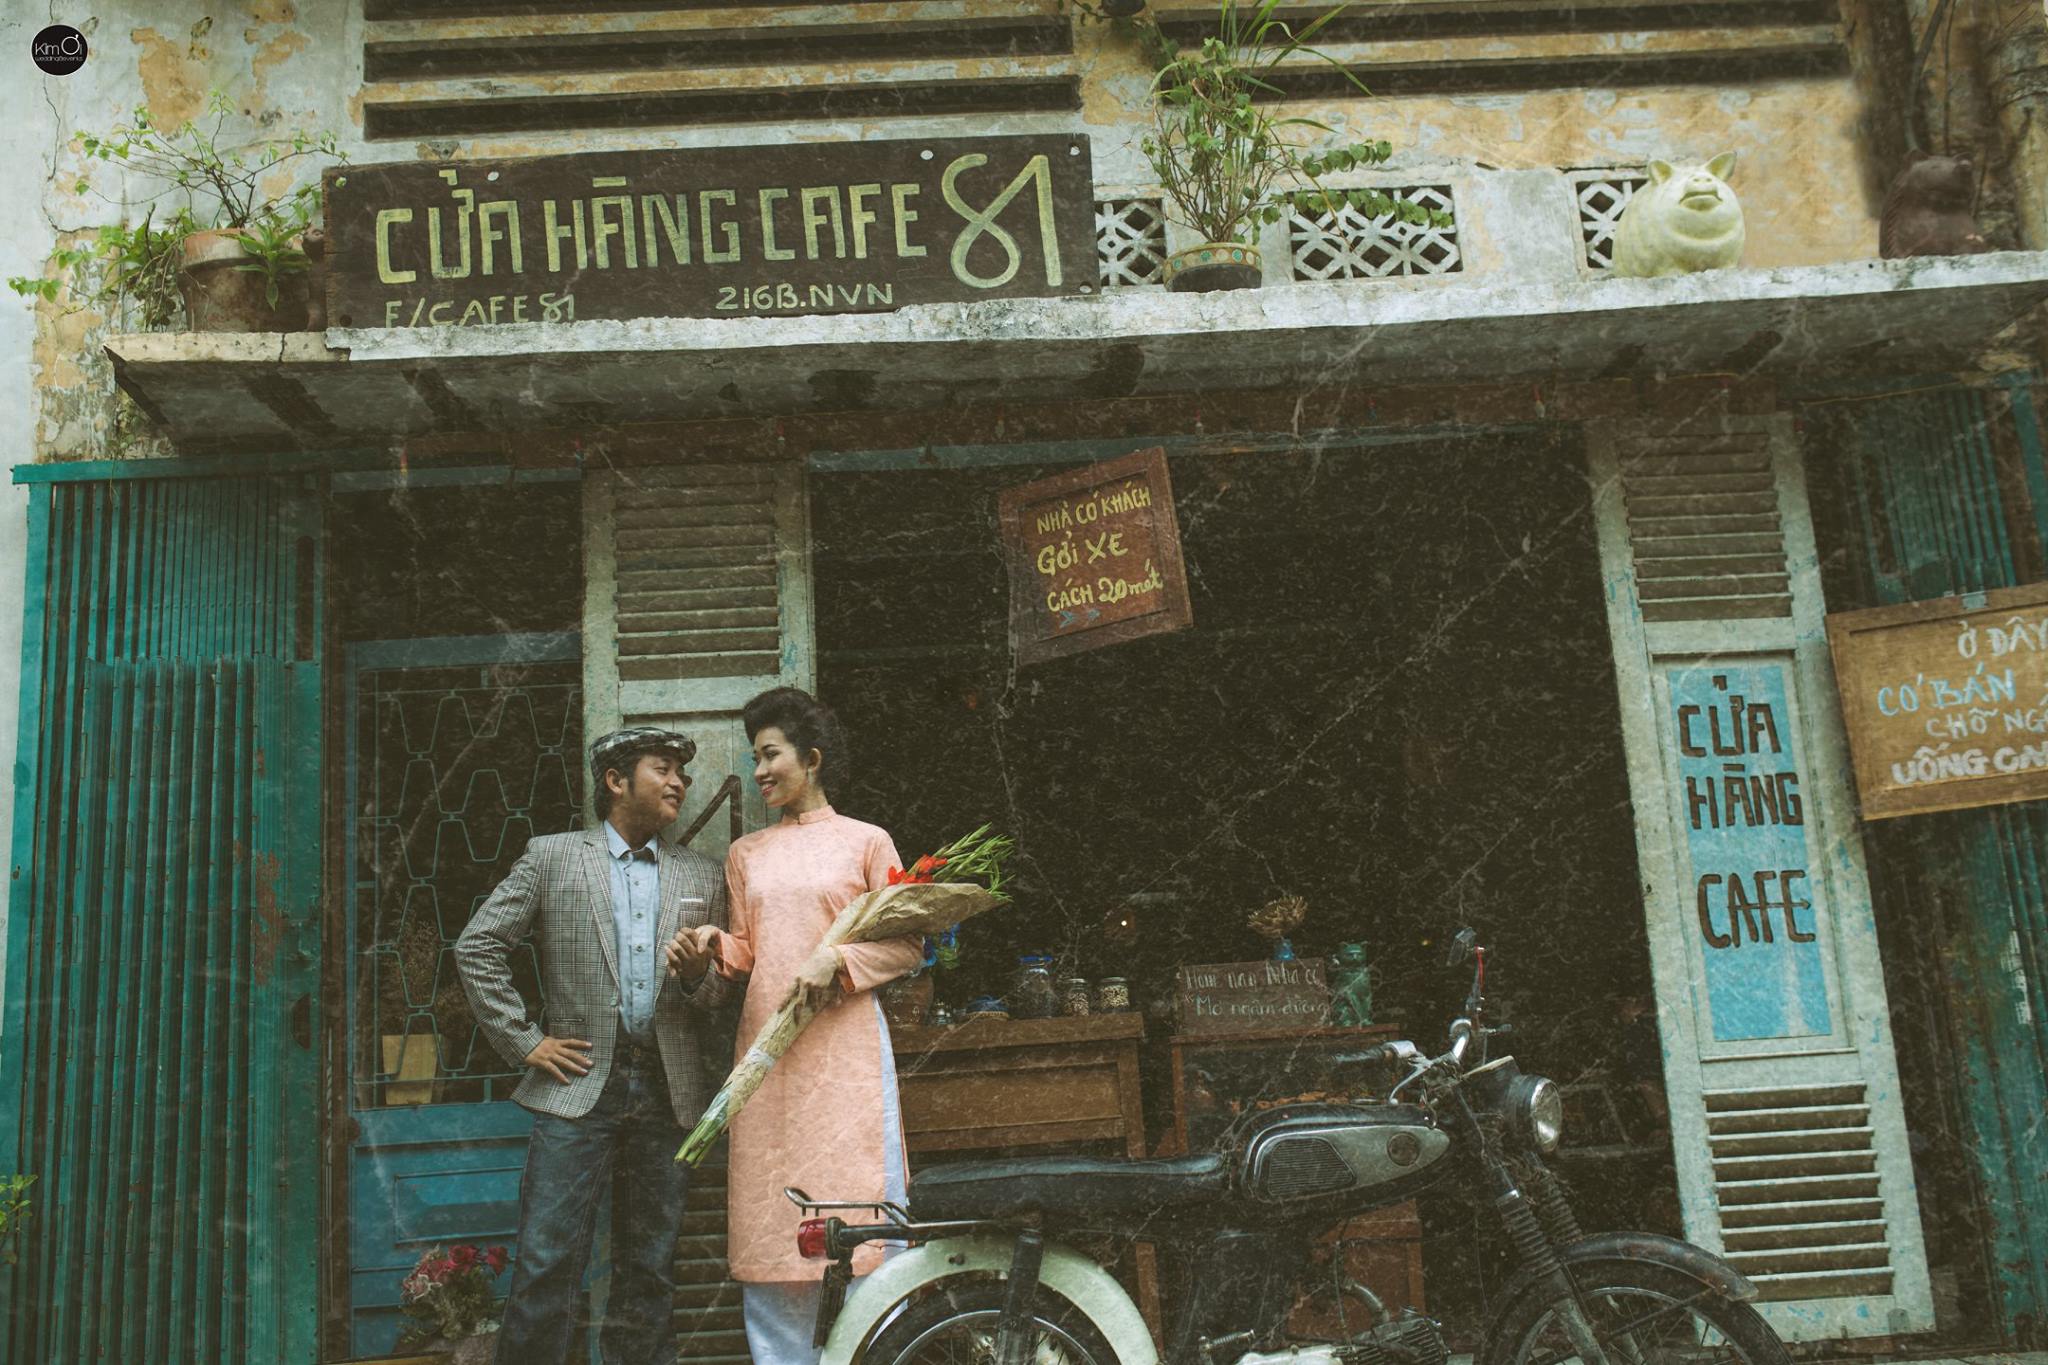 Hành trình kỷ niệm về Sài Gòn của những người trưởng thành qua các bức ảnh thời xưa sẽ đưa bạn đến với một Sài Gòn đầy nhiệt huyết và sôi động.